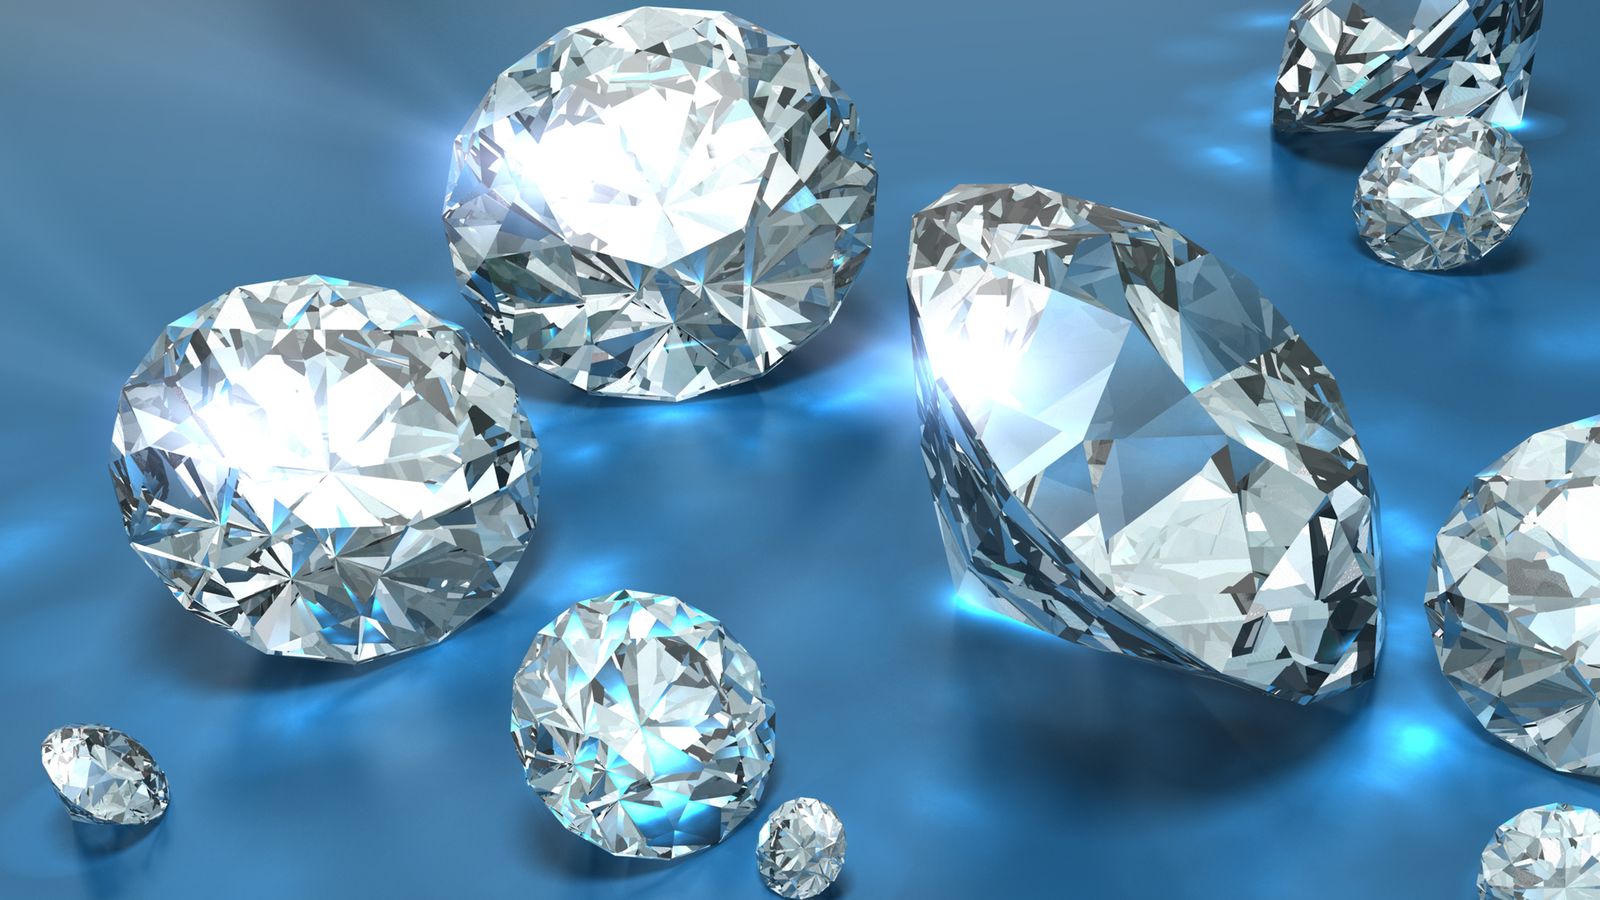 علماء يقترحون أن عطارد يحتوي على طبقة من الماس يصل سمكها إلى 10 أميال | أخبار العلوم والتكنولوجيا